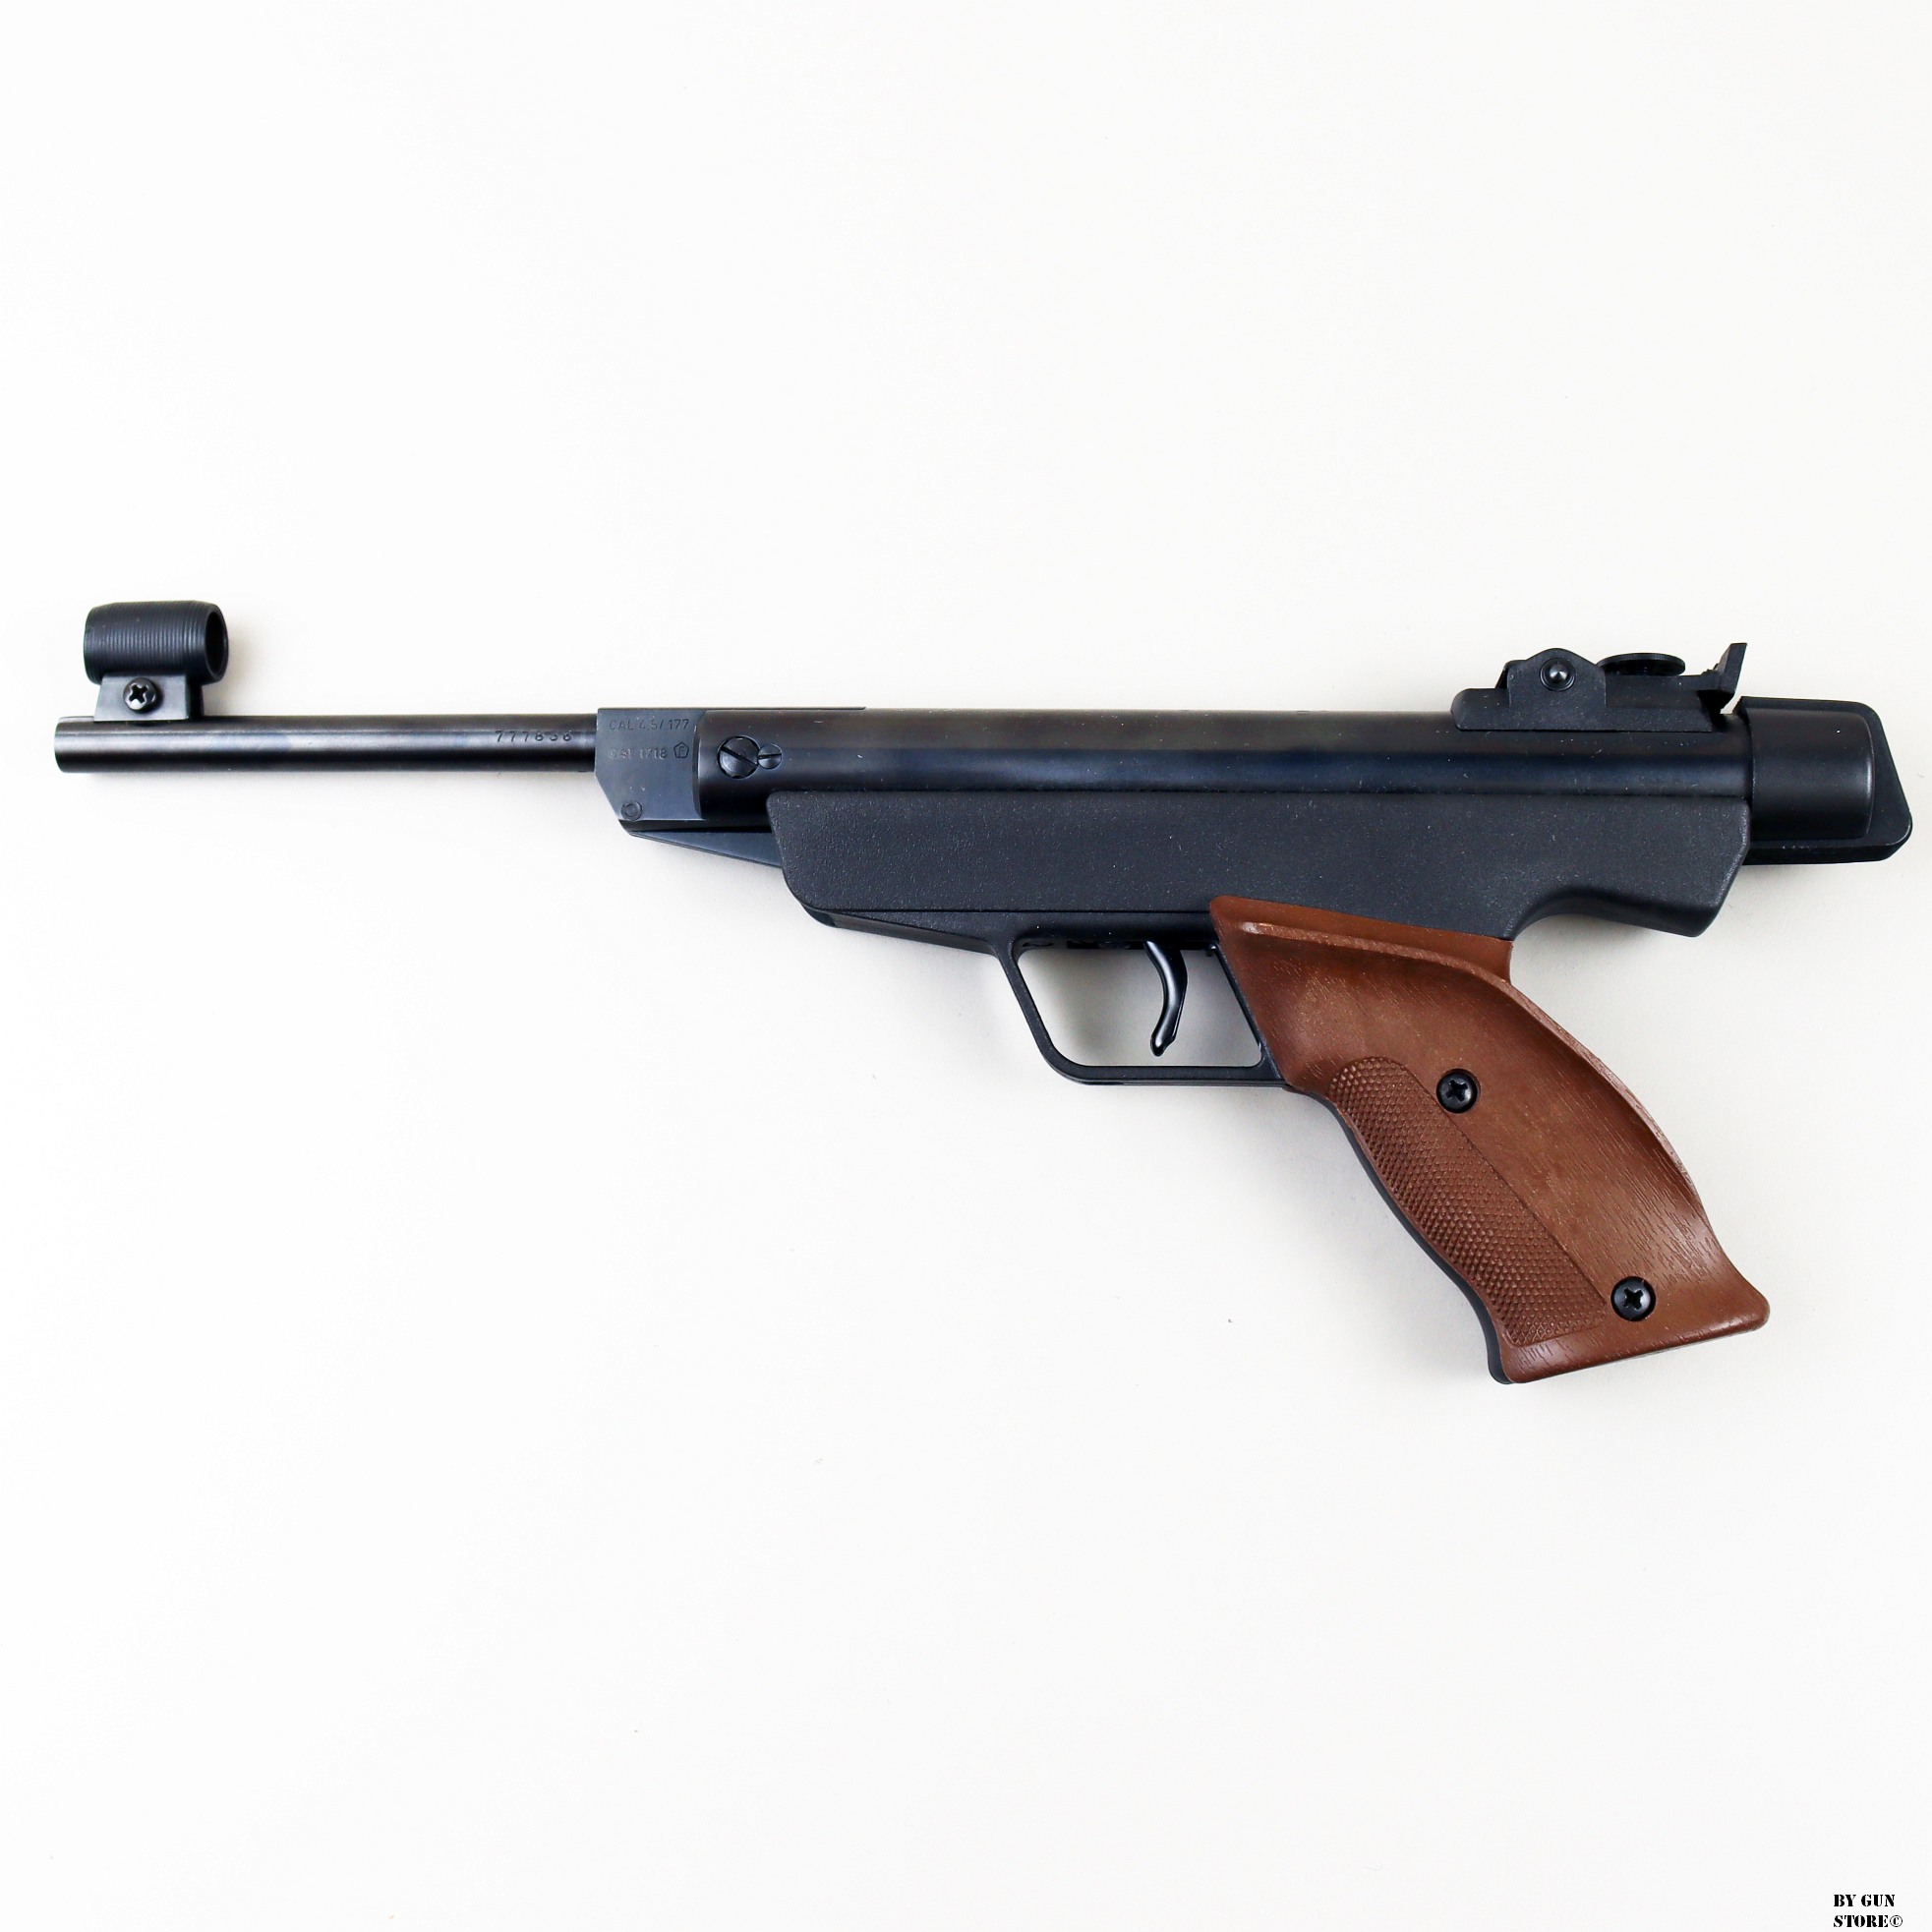 Pistola aria compressa Diana mod. 5 cal. 4.5 matr. 777836 - Gun